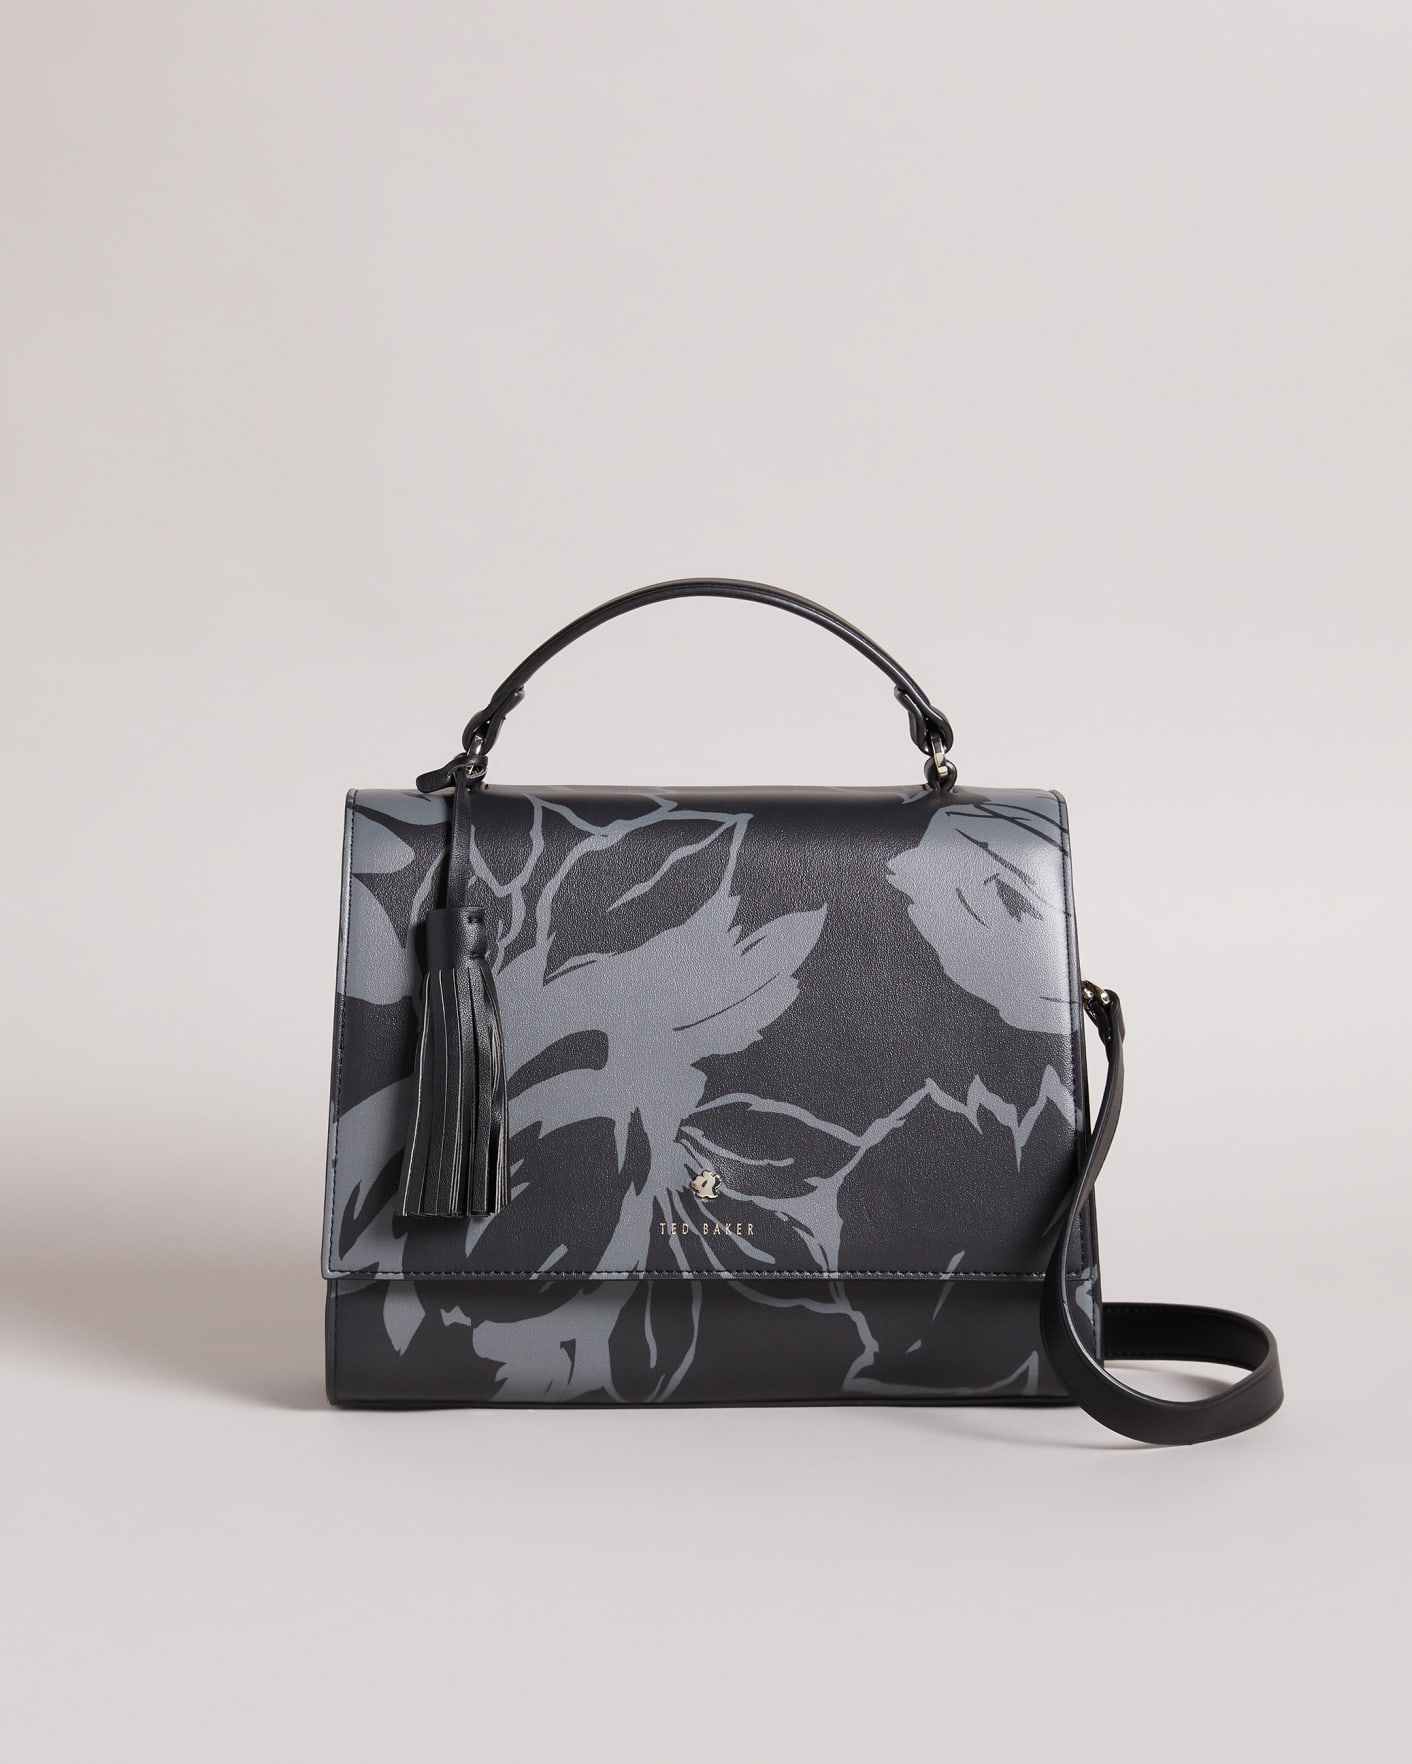 Ted Baker floral handbag with strap